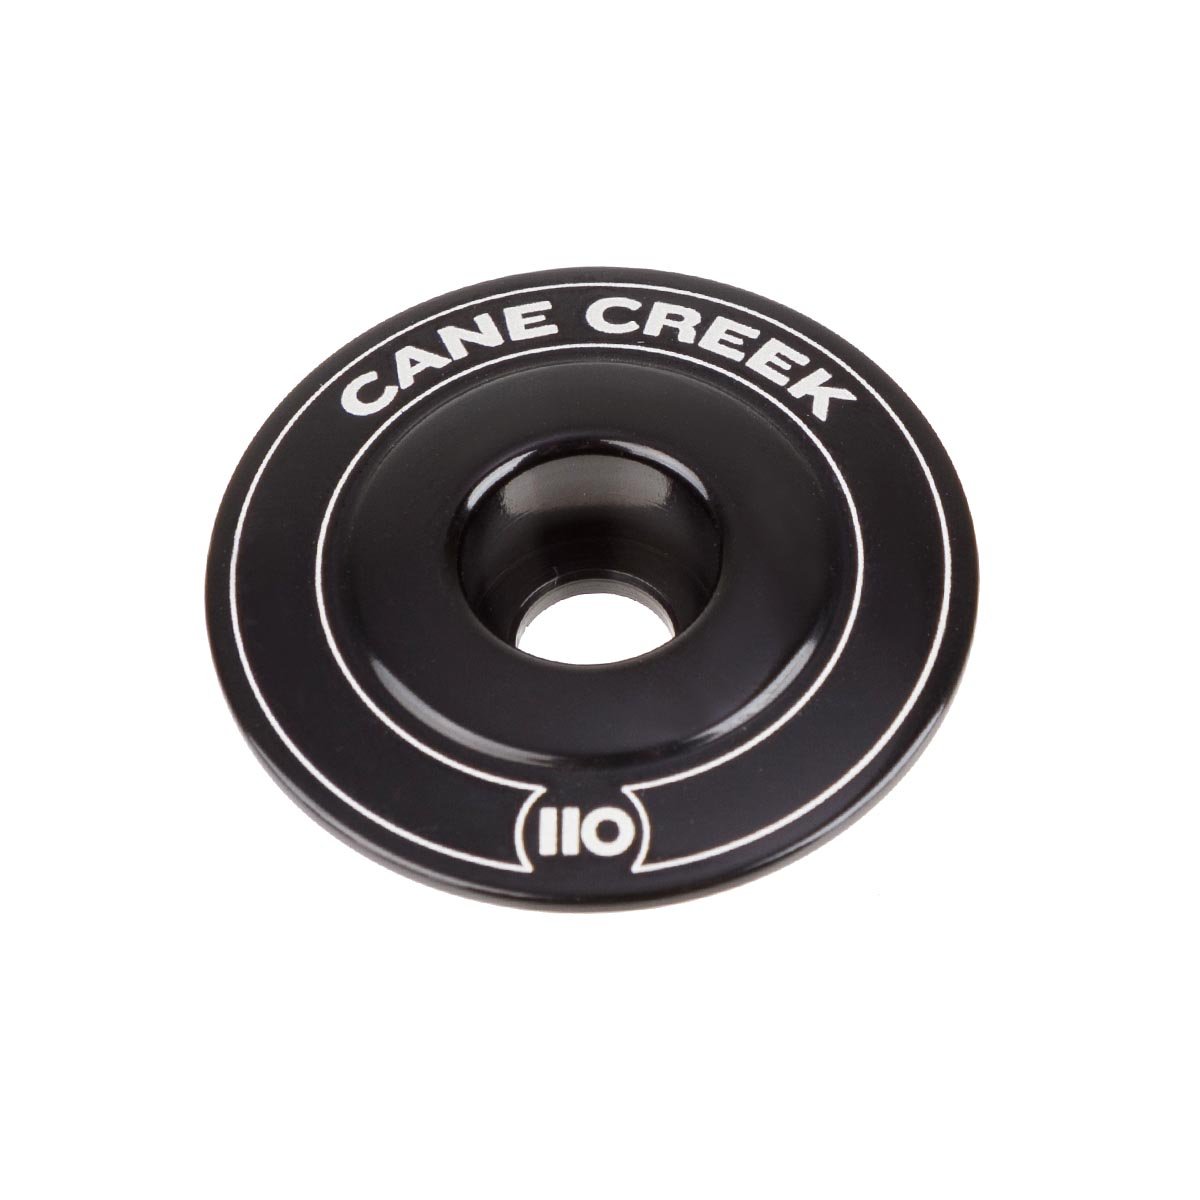 Cane Creek Ahead Cap 110 Black, Aluminium, 1 1/8 Inches